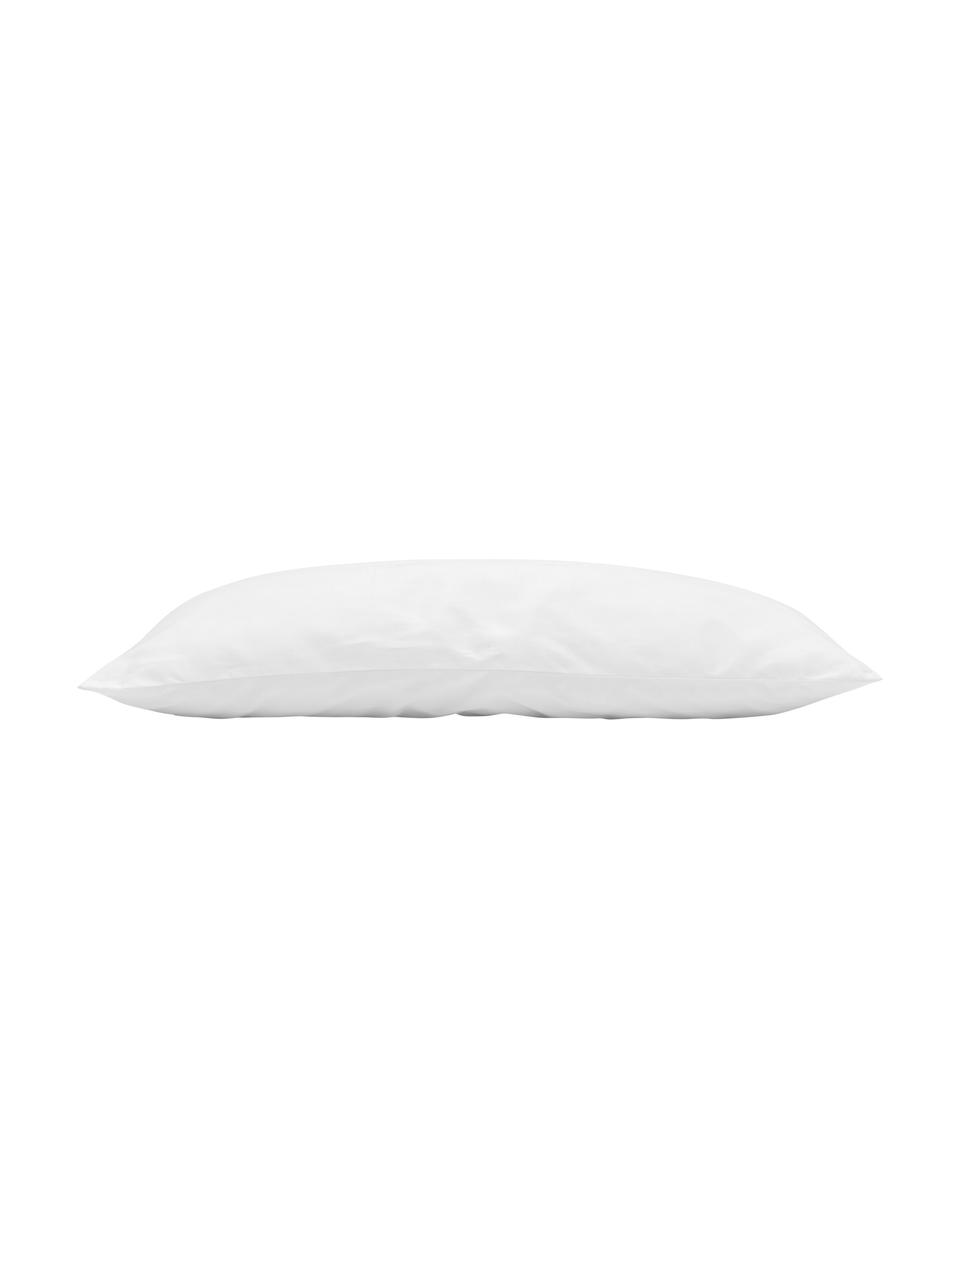 Wkład do poduszki Sia, 40x60, Biały, S 40 x D 60 cm